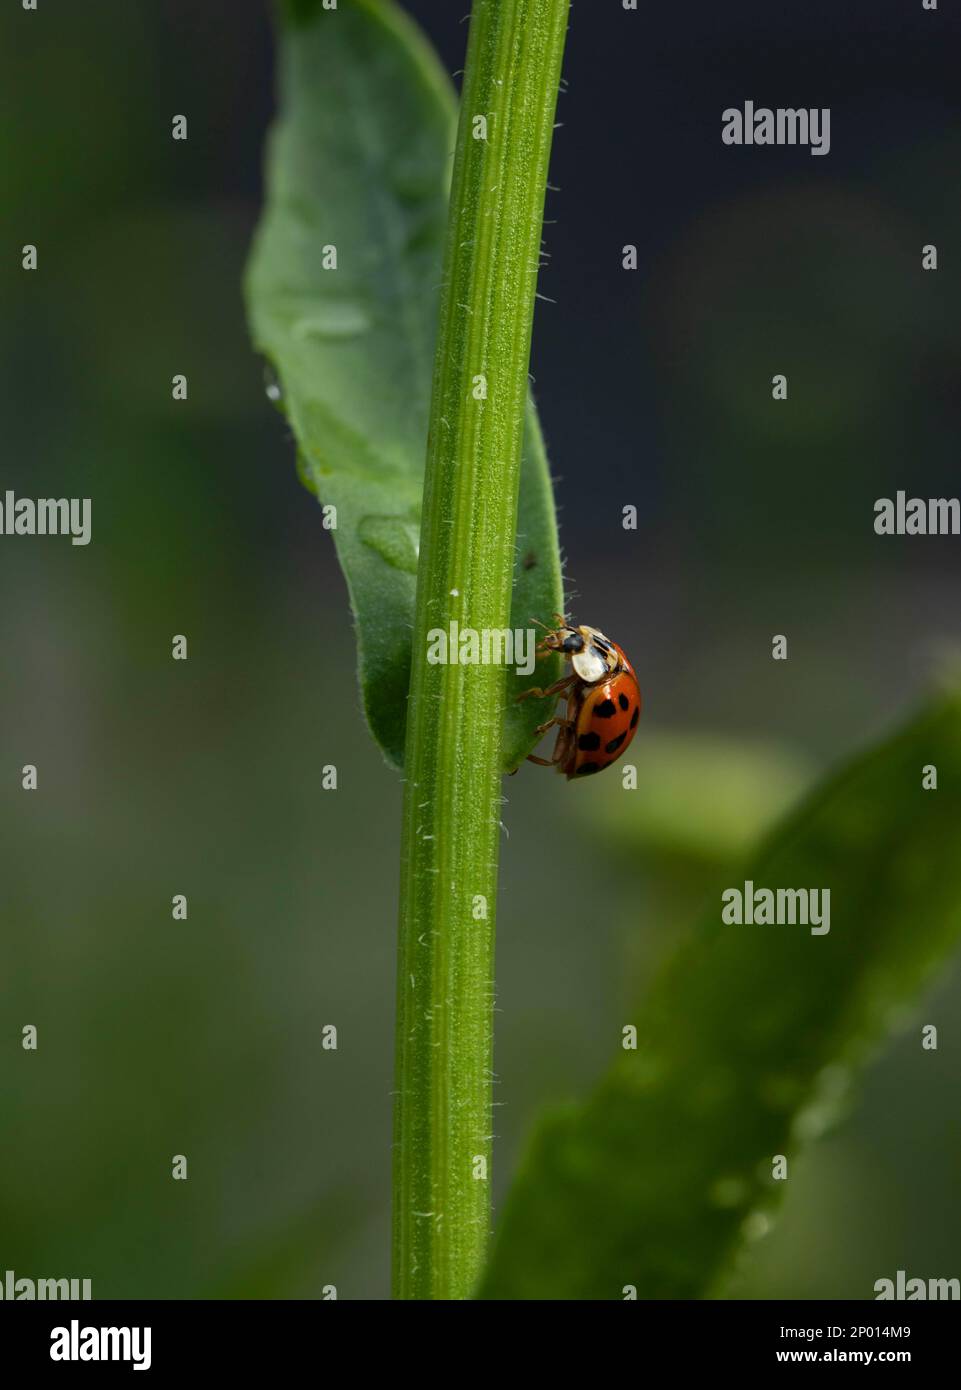 An Asian lady beetle on a Shasta daisy. Stock Photo